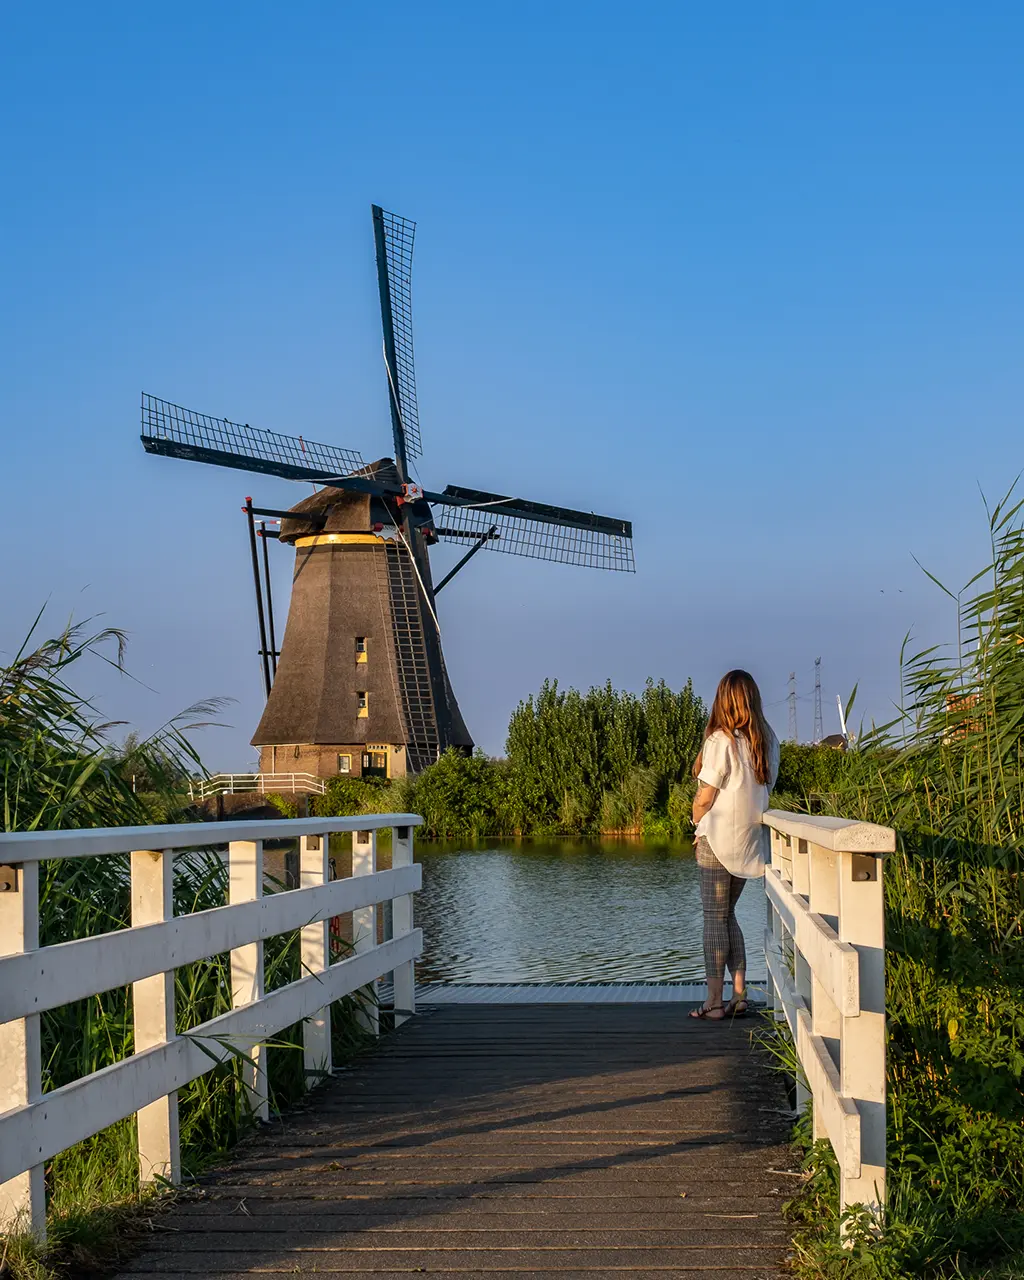 Visiter les Pays-Bas, communément appelés la Hollande.